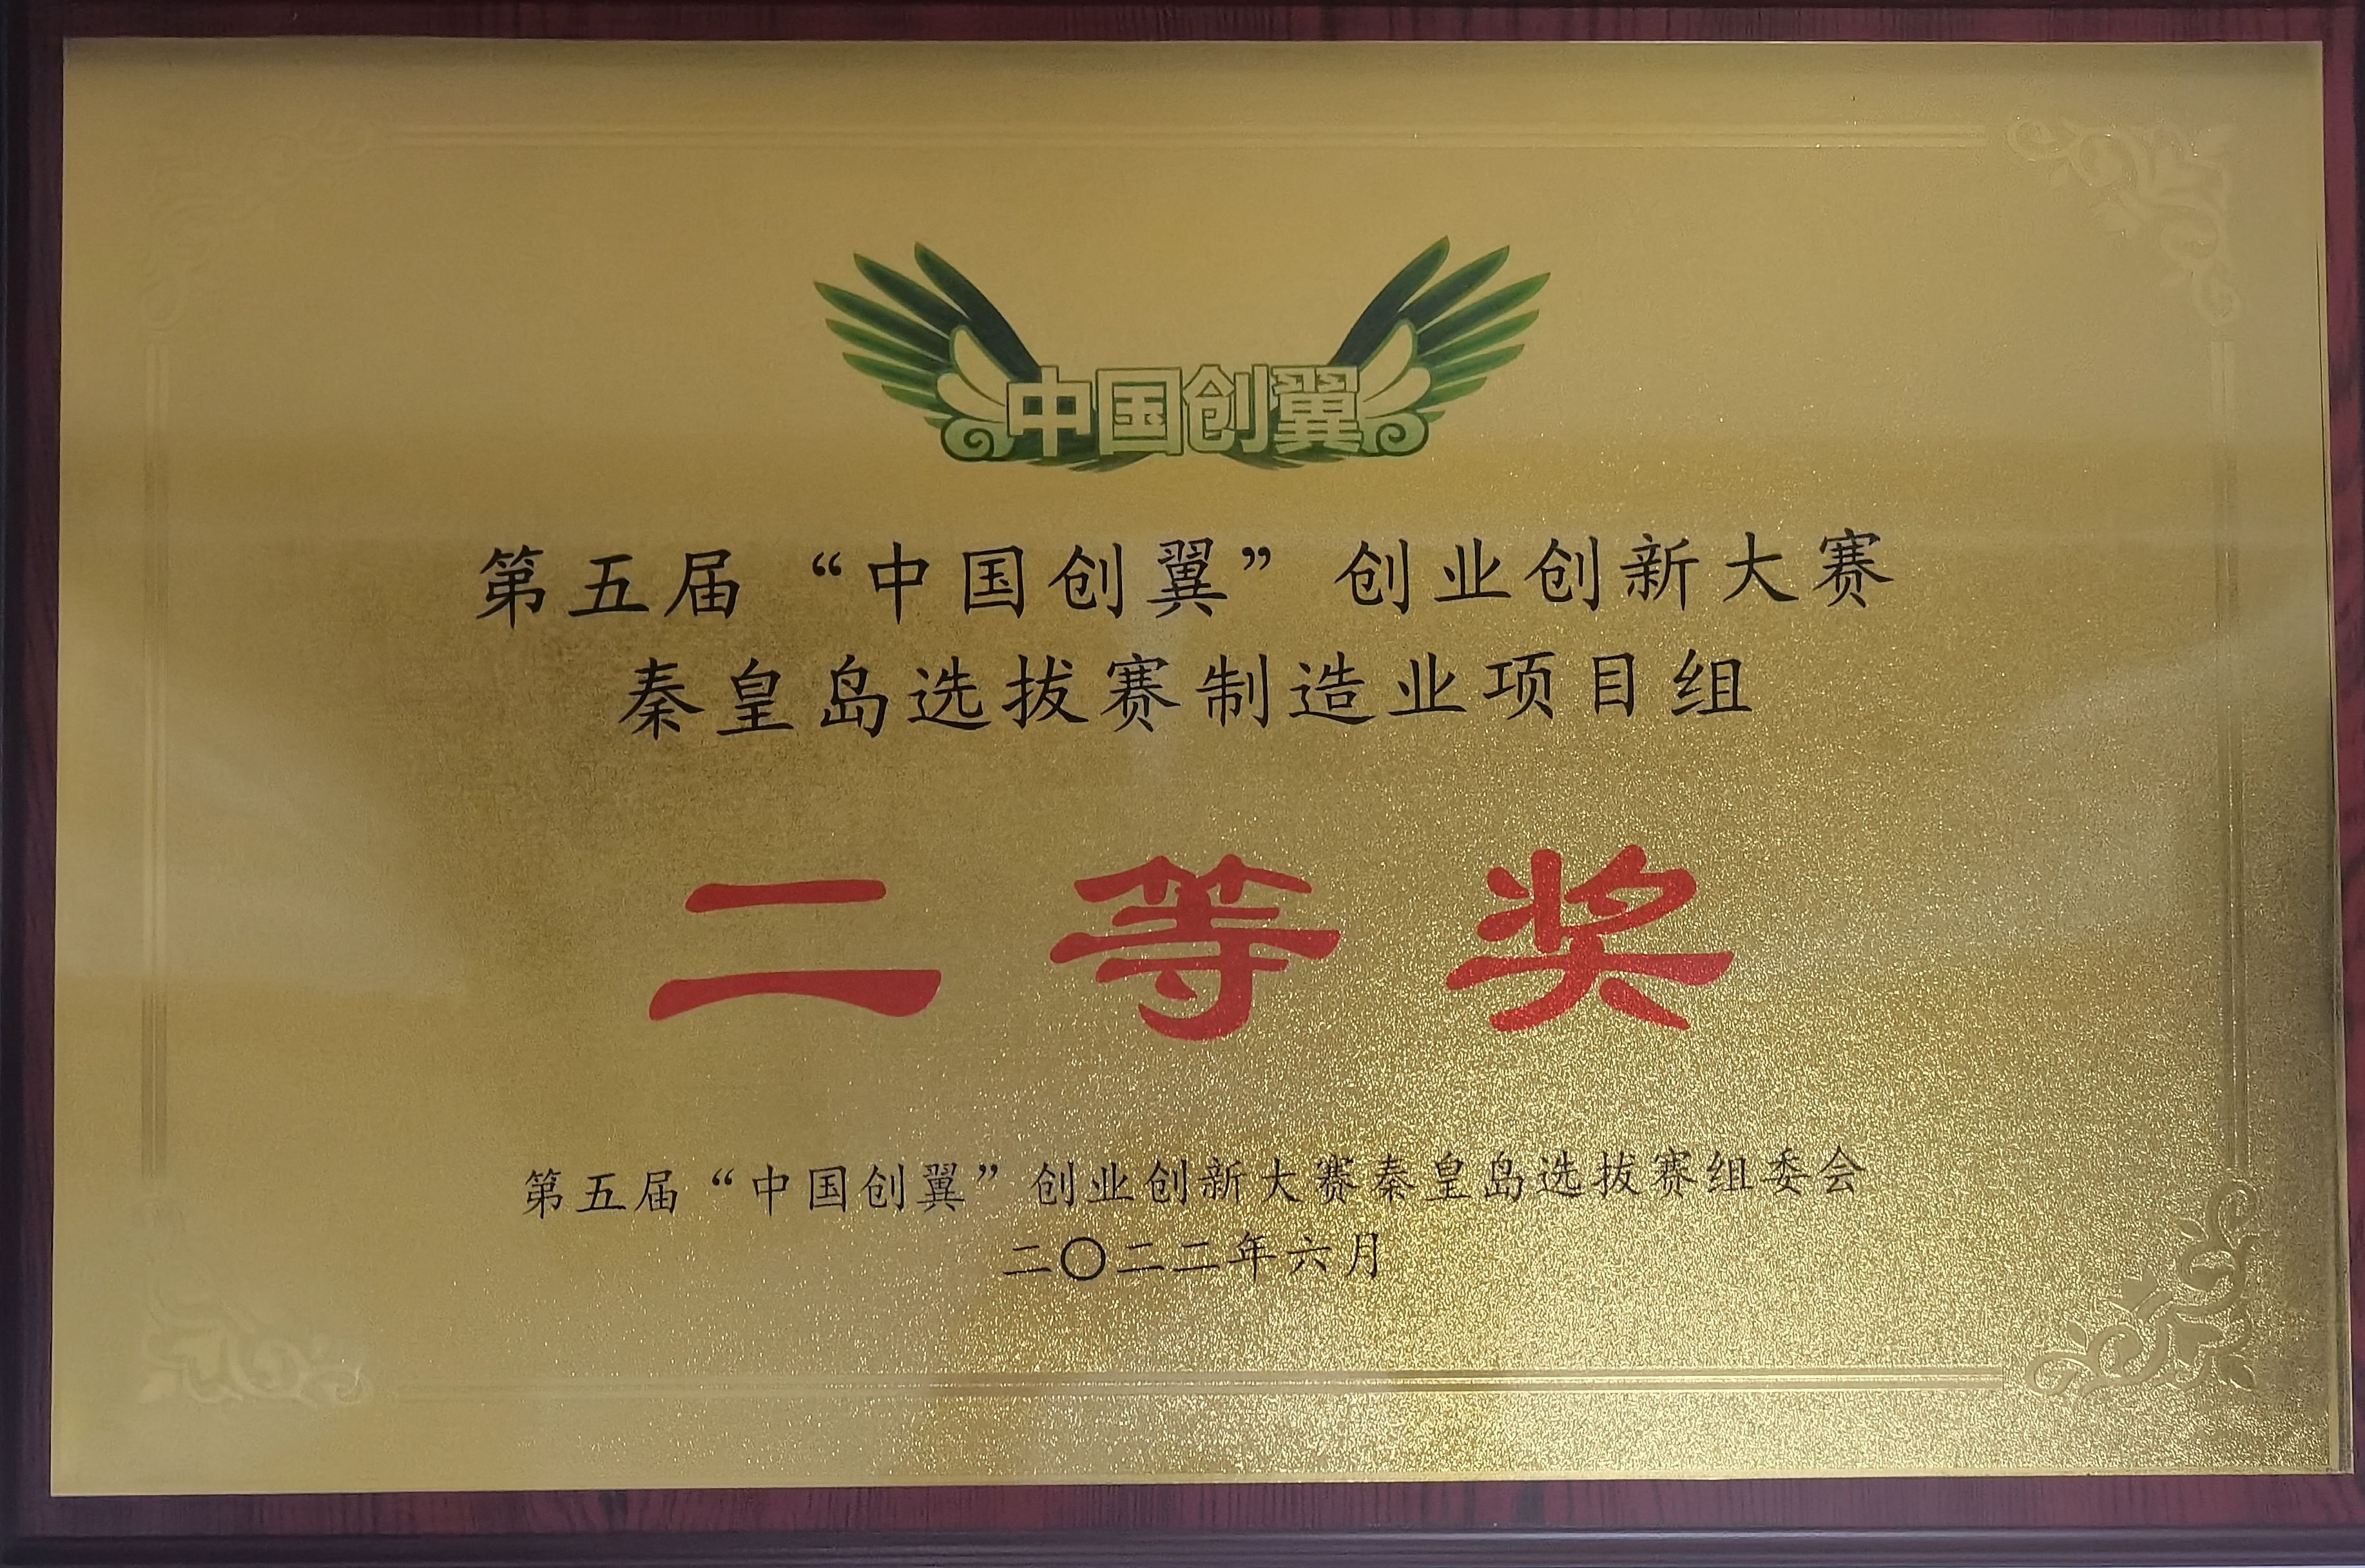 汇久公司获得“中国创翼”创业创新大赛二等奖